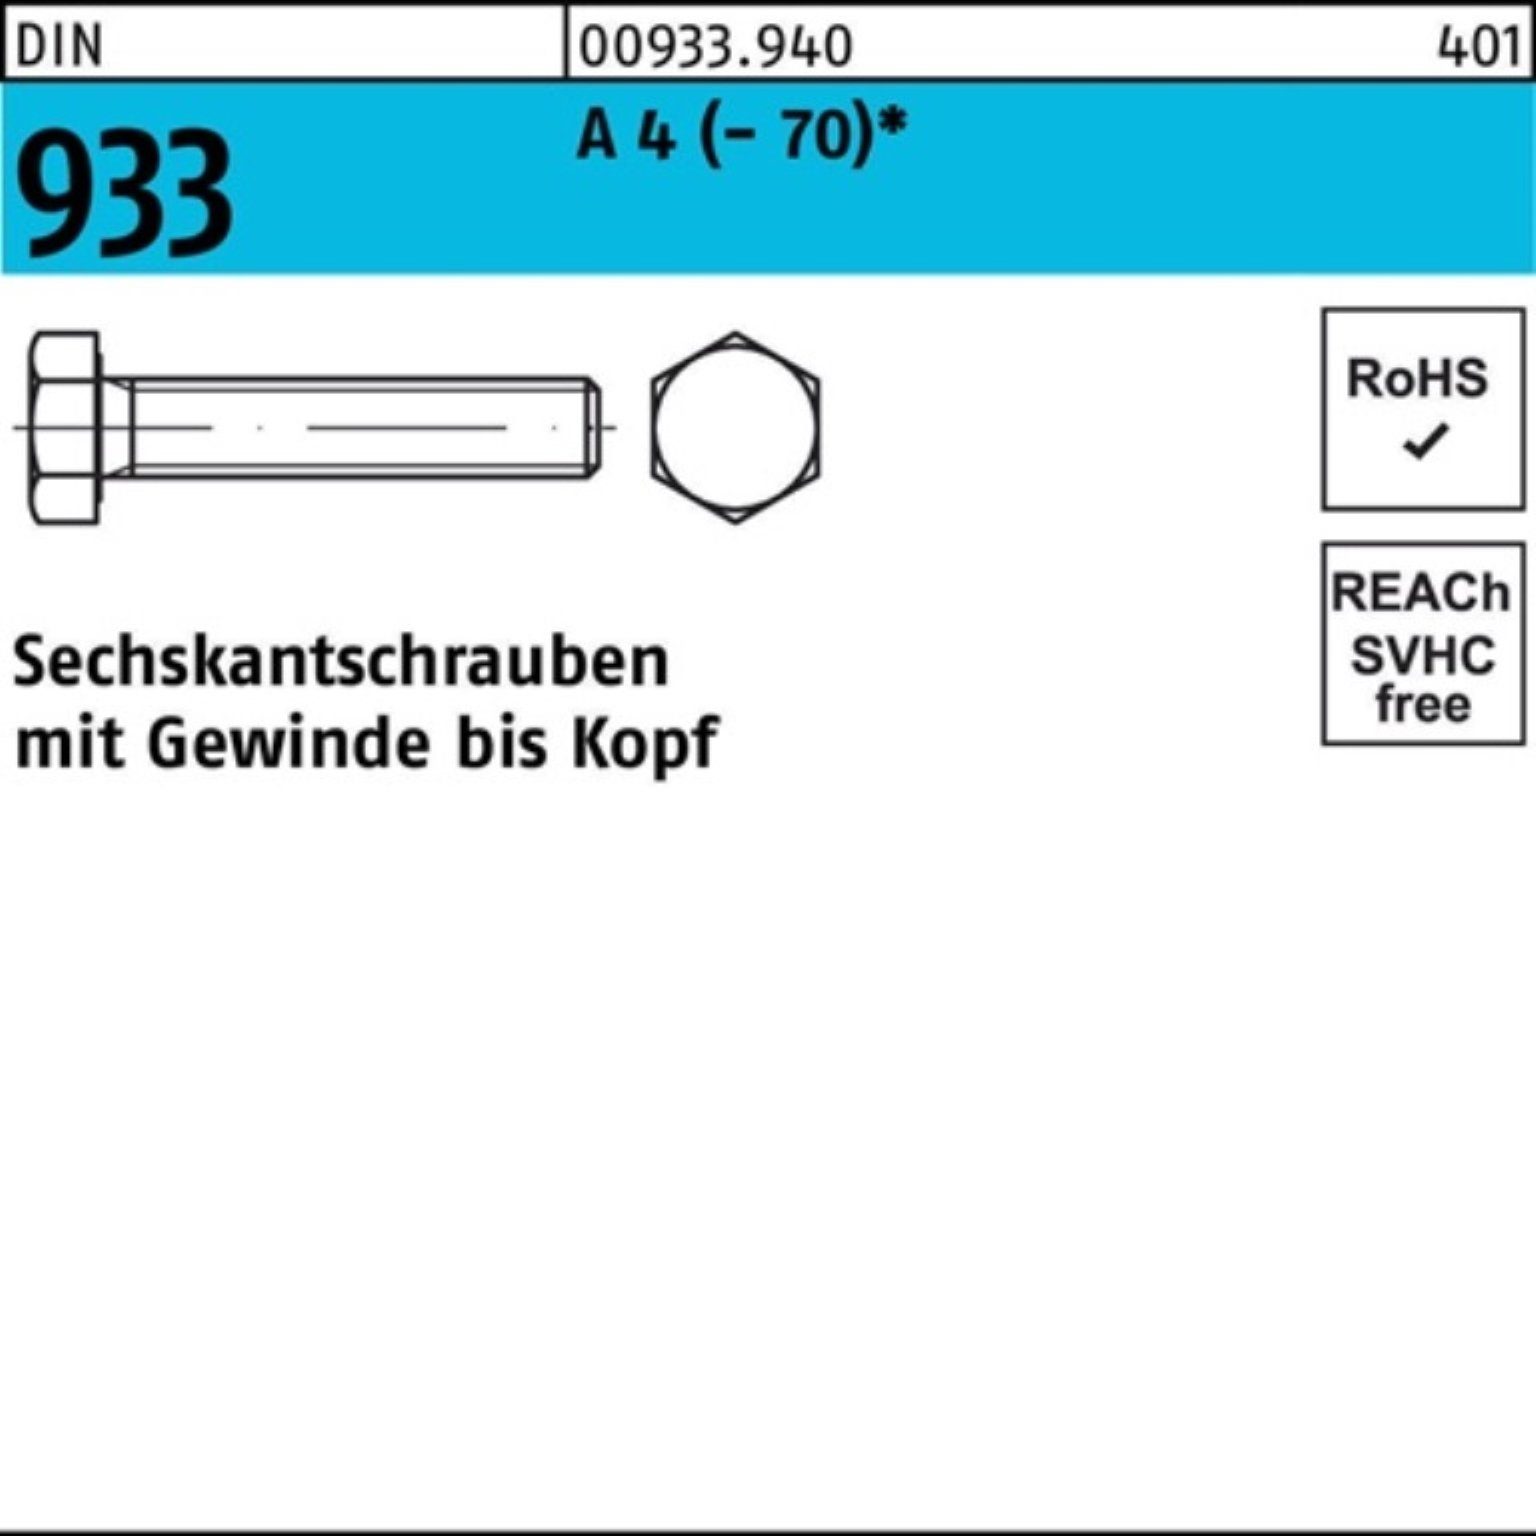 VG Sechskantschraube 100er (70) DI M22x Reyher 4 A 933 Stück Sechskantschraube 1 DIN Pack 55